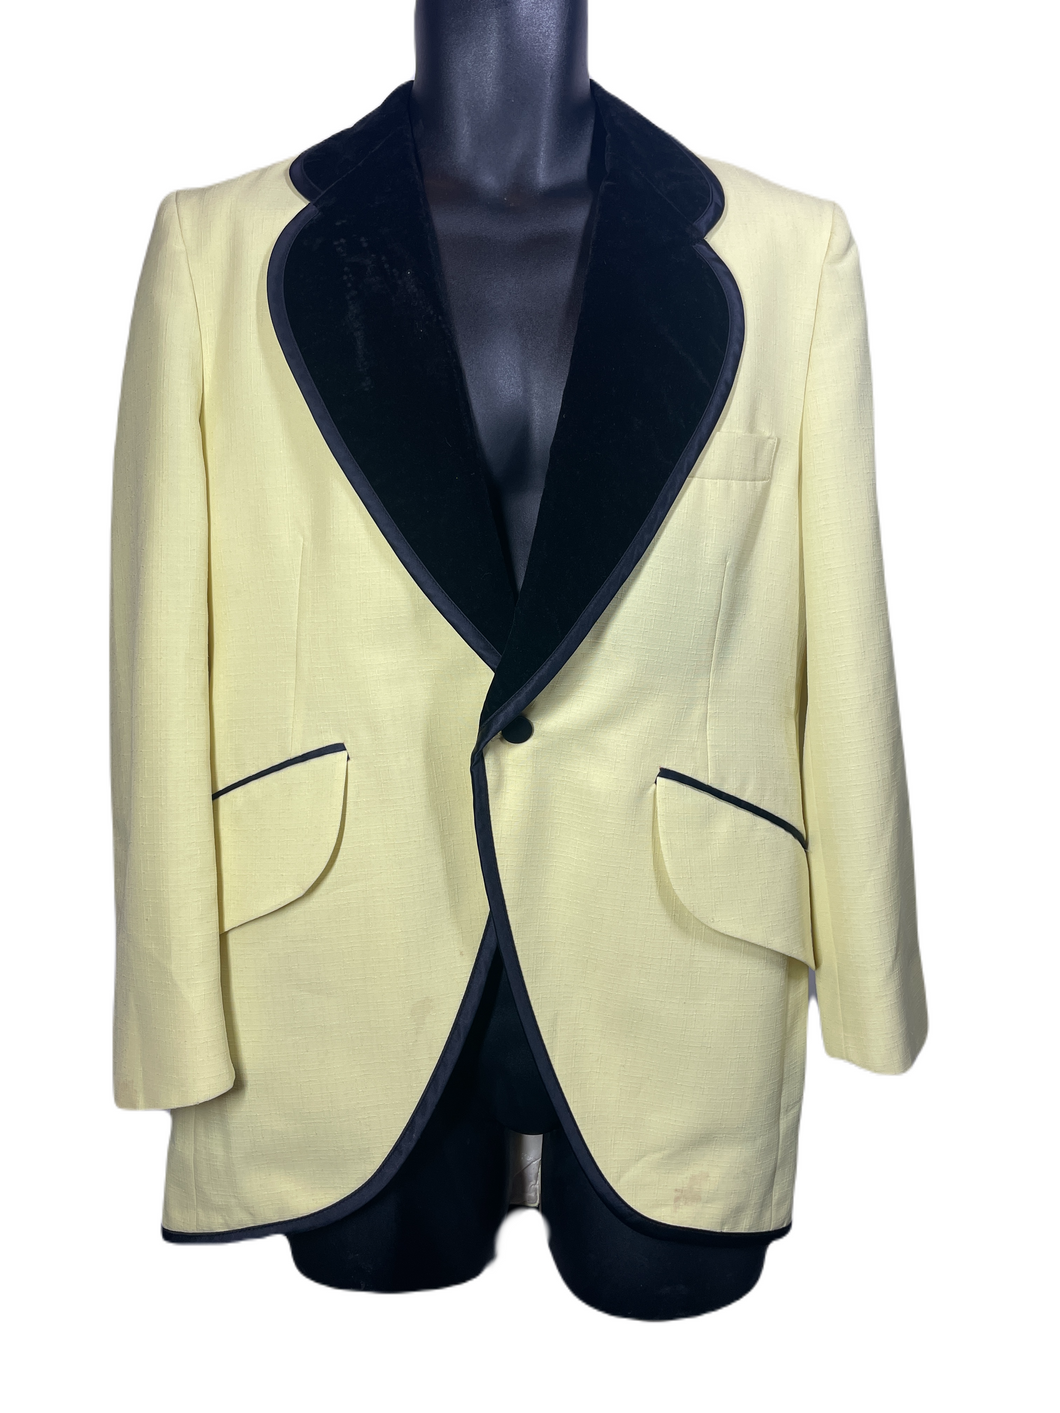 1970's Velvet Trimmed Yellow Tuxedo Jacket Size 38